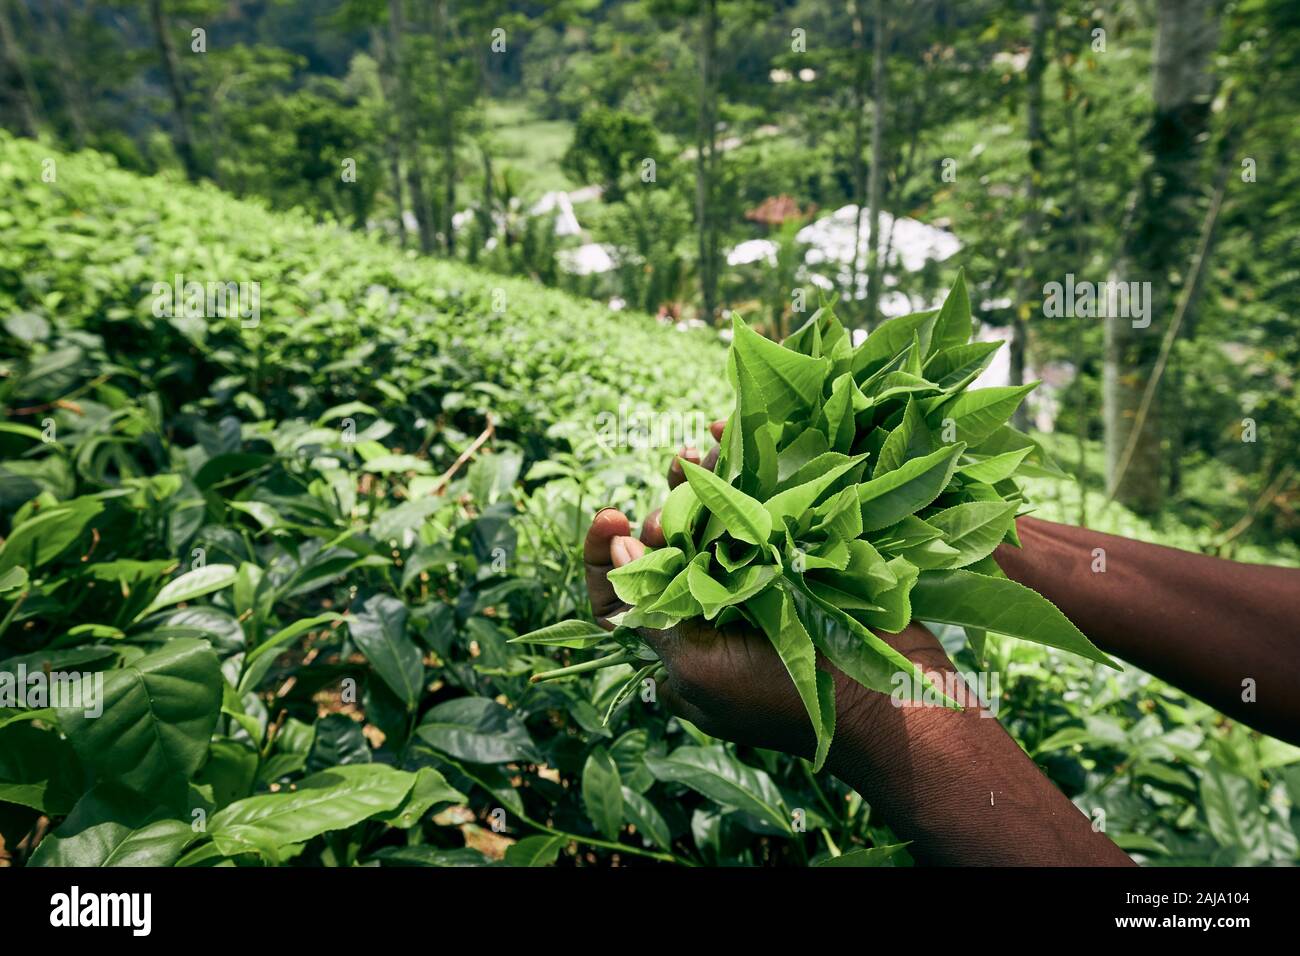 Sur le plateau explique son travailleur. Femme montrant les feuilles de thé dans la région de palm, Sri Lanka Banque D'Images